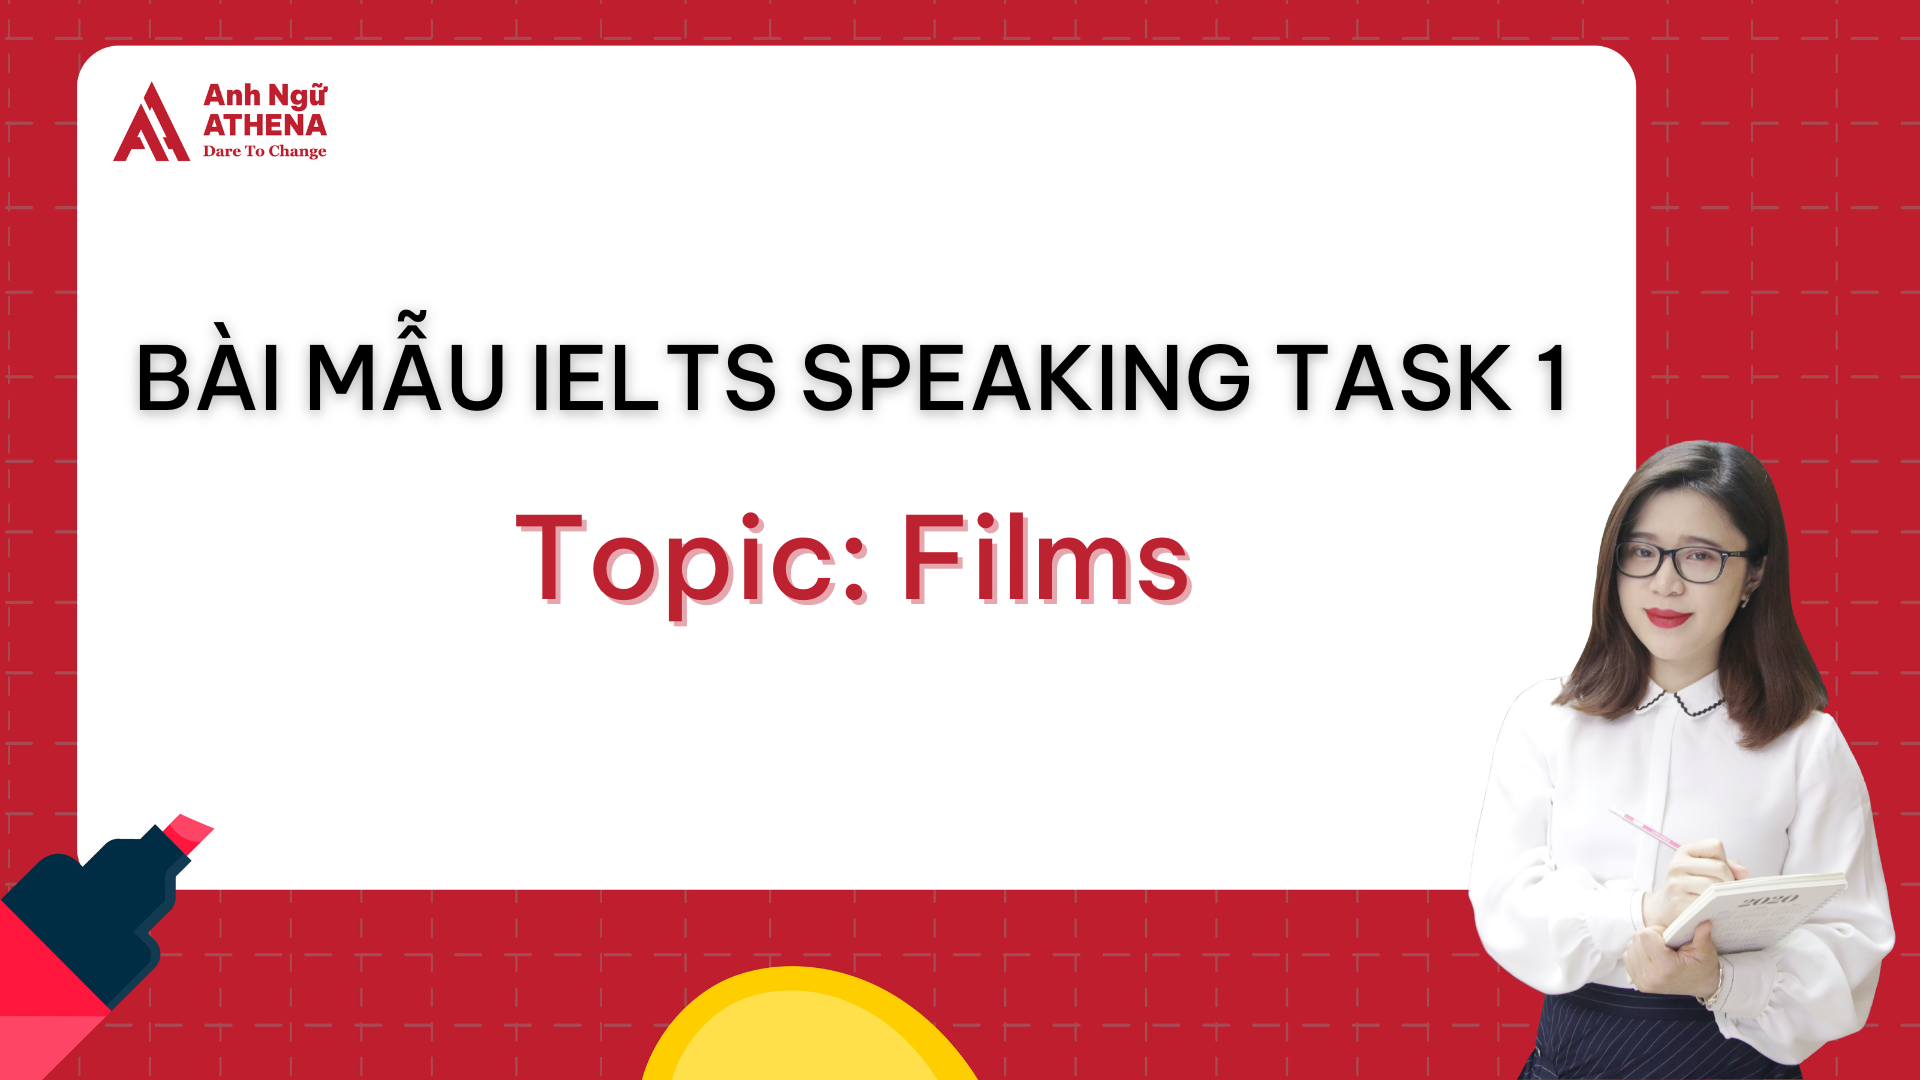 Bài mẫu IELTS Speaking Part 1 - Topic: Films